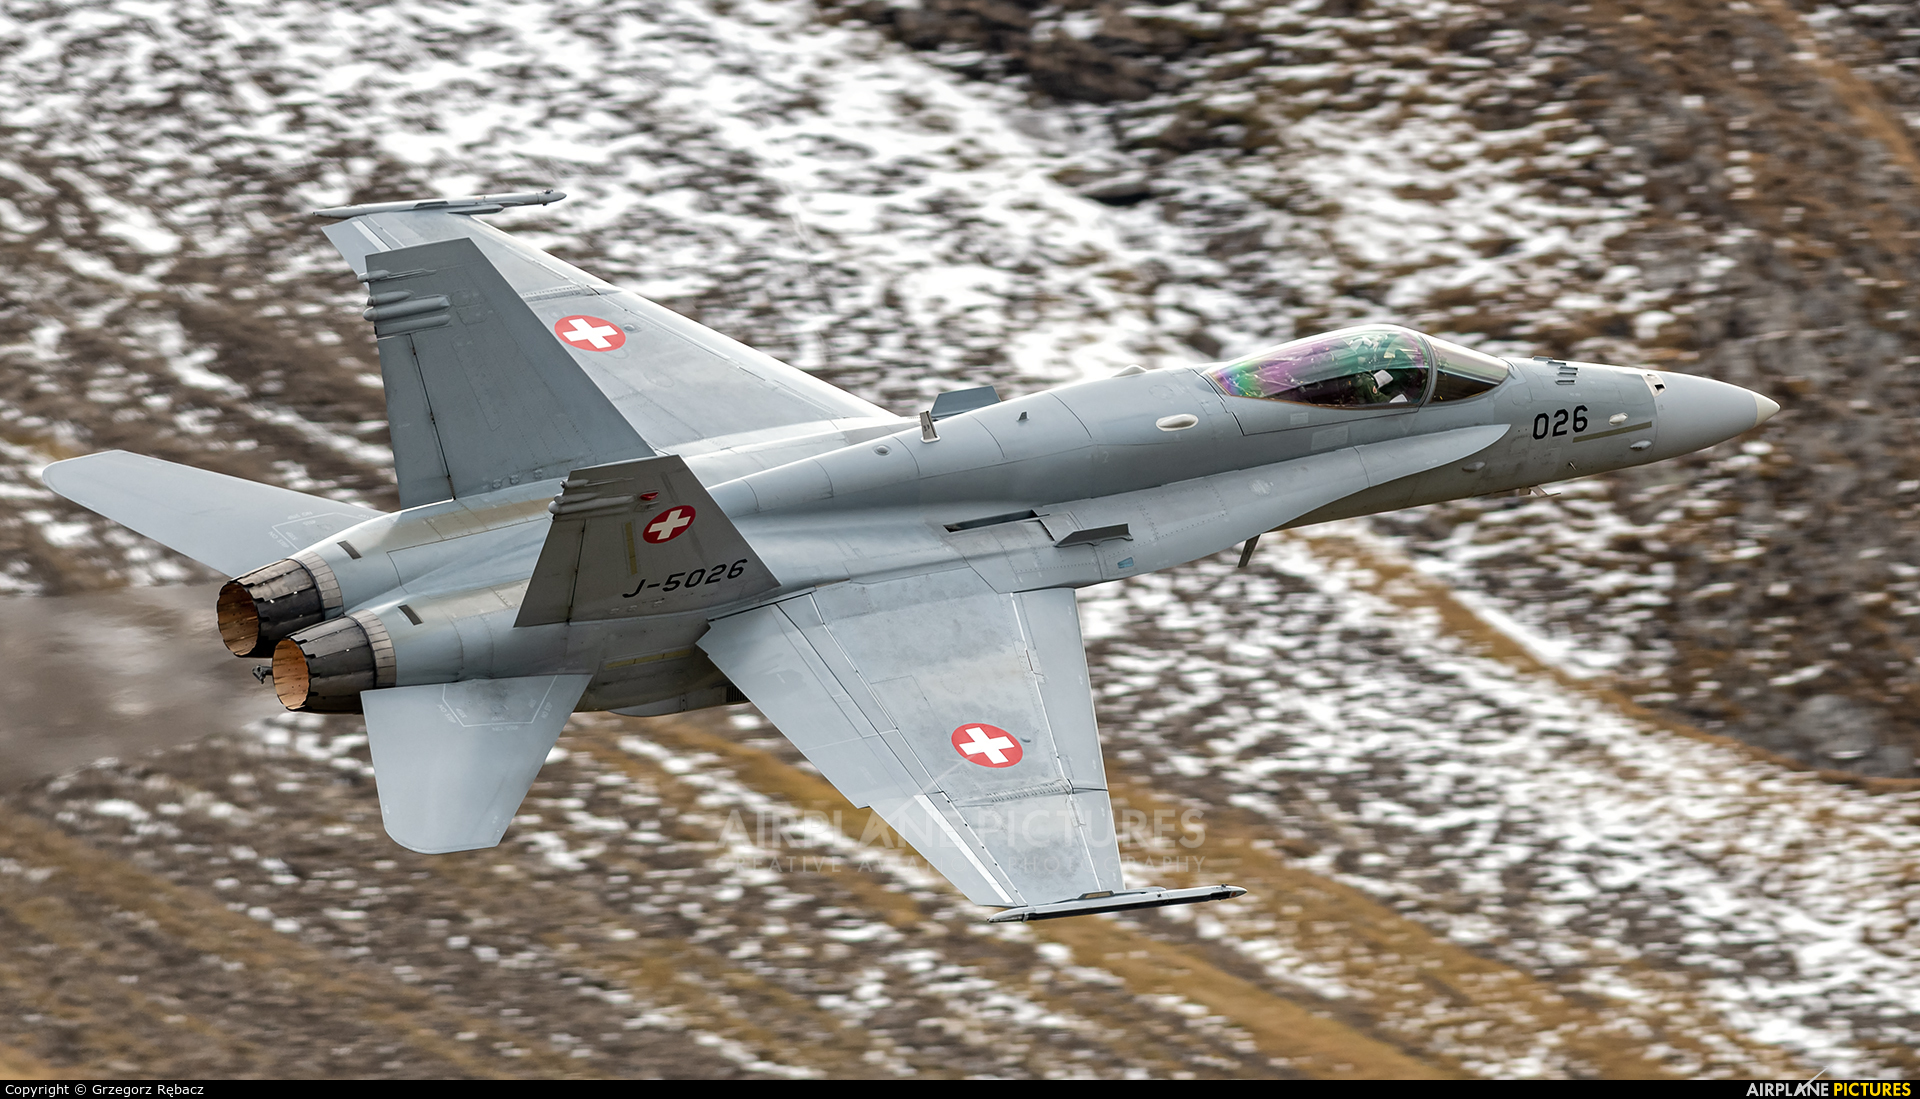 Switzerland - Air Force J-5026 aircraft at Axalp - Ebenfluh Range